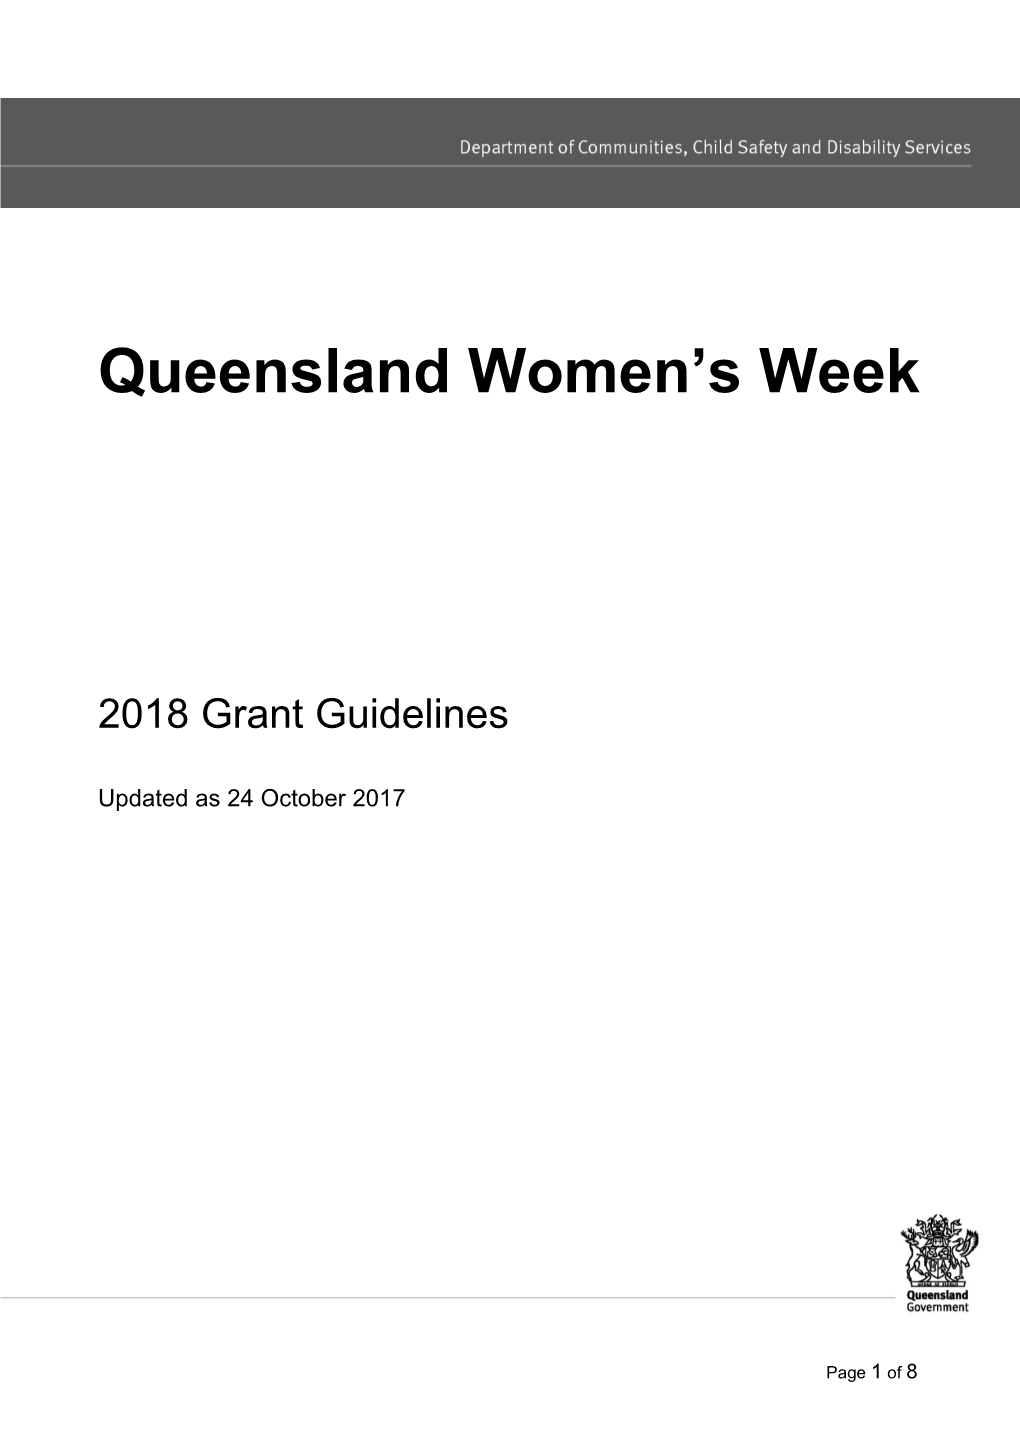 Queensland Women's Week 2018 Grant Guidelines